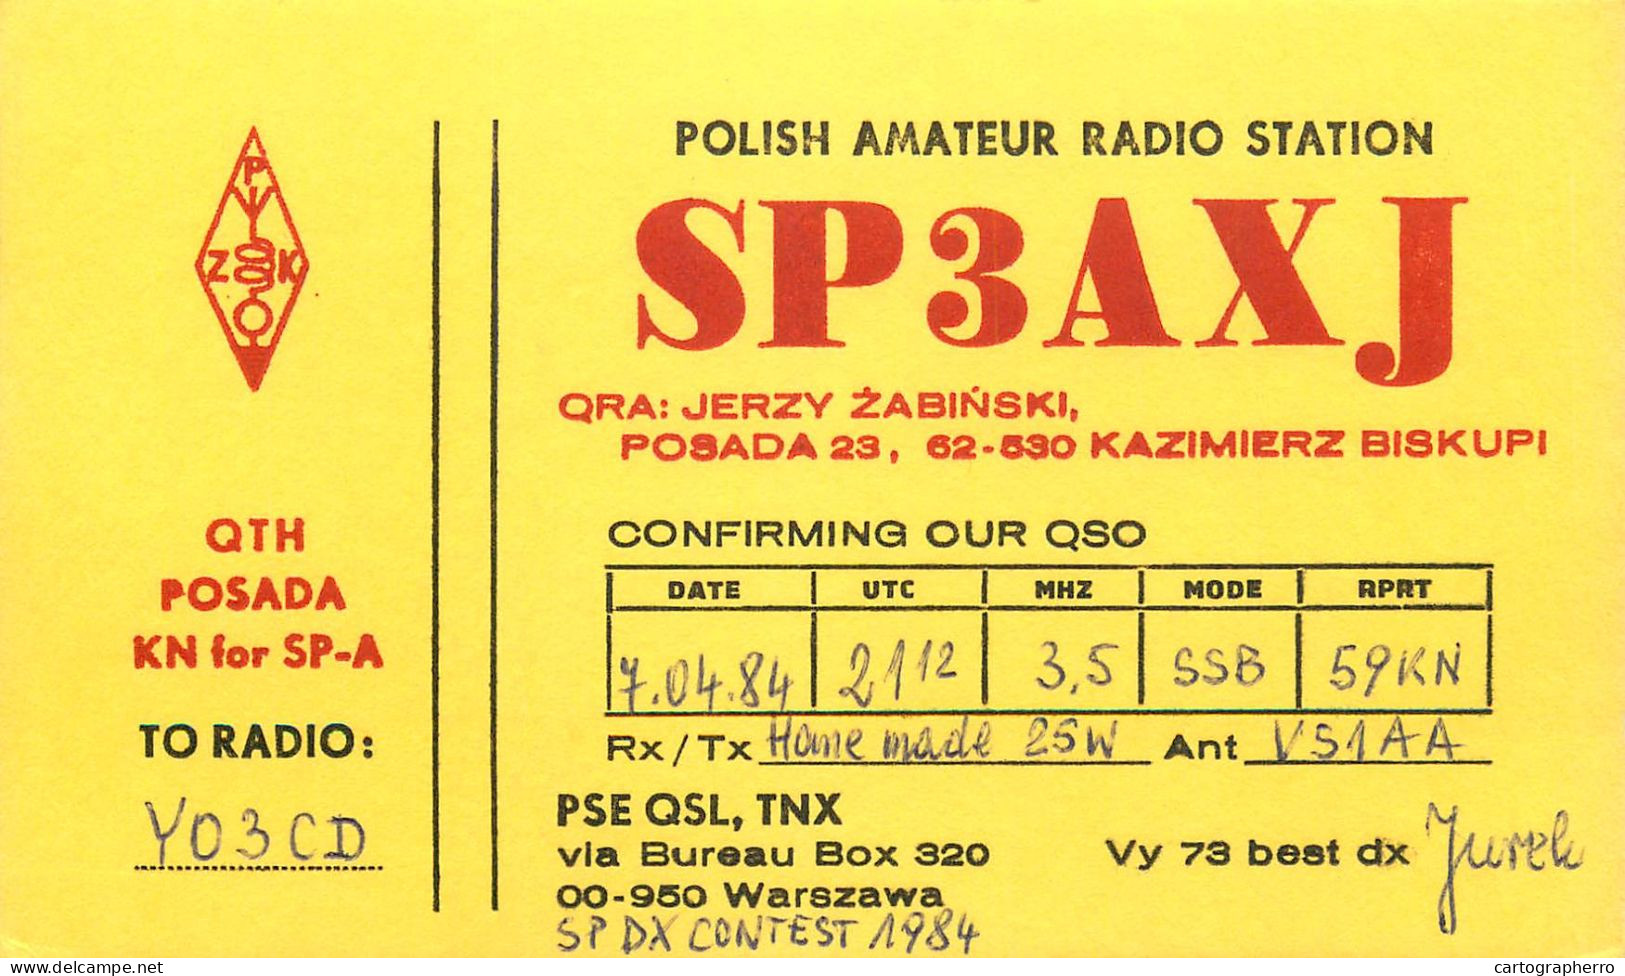 Polish Amateur Radio Station QSL Card Poland Y03CD SP3AXJ - Amateurfunk